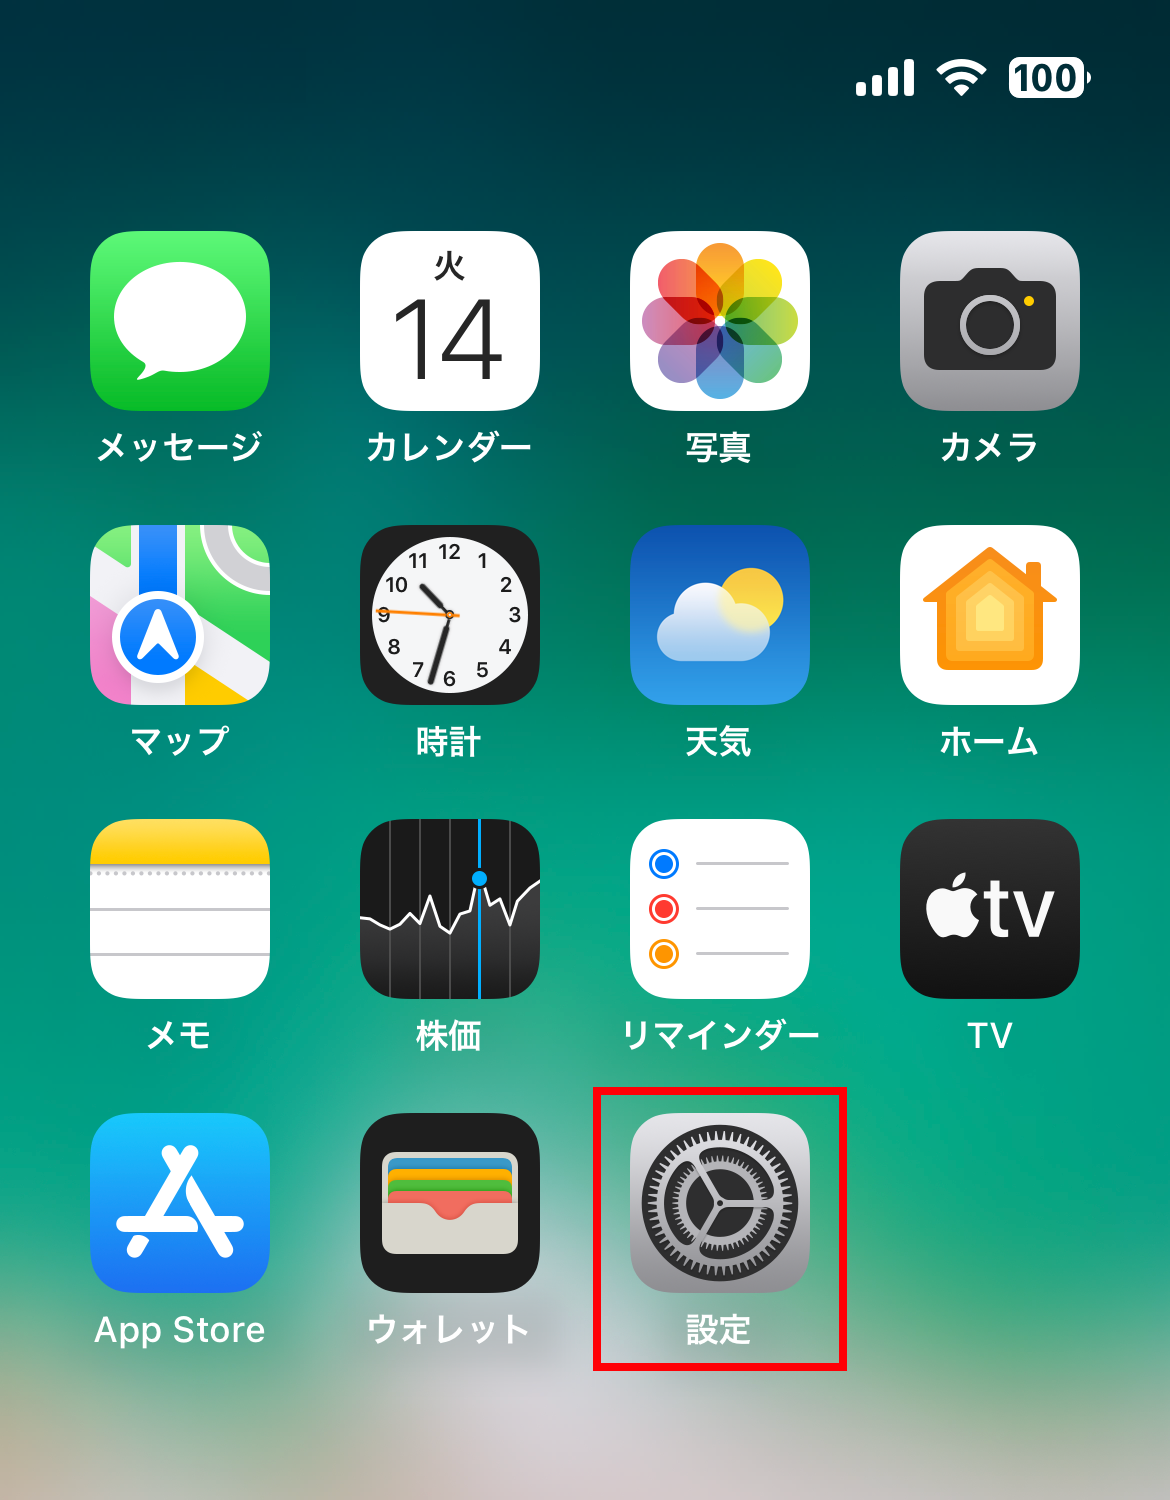 1. iPhoneのホーム画面から「設定」をタップ